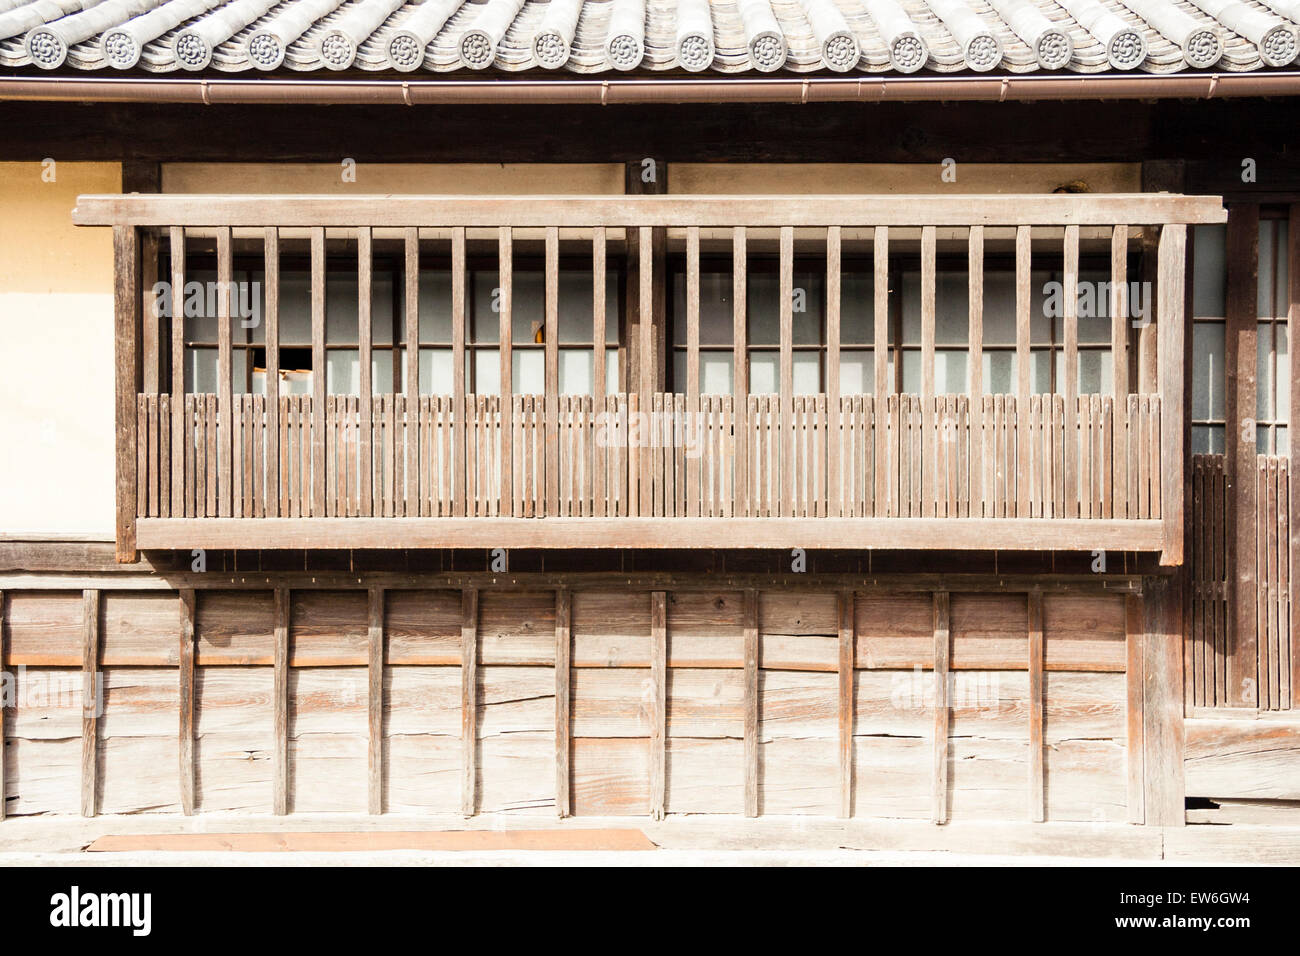 Biken, Kurashiki In Giappone. Tradizionale finestra in legno e balcone giapponese su muro di gesso bianco con la parte inferiore coperta in tavole di legno. Foto Stock